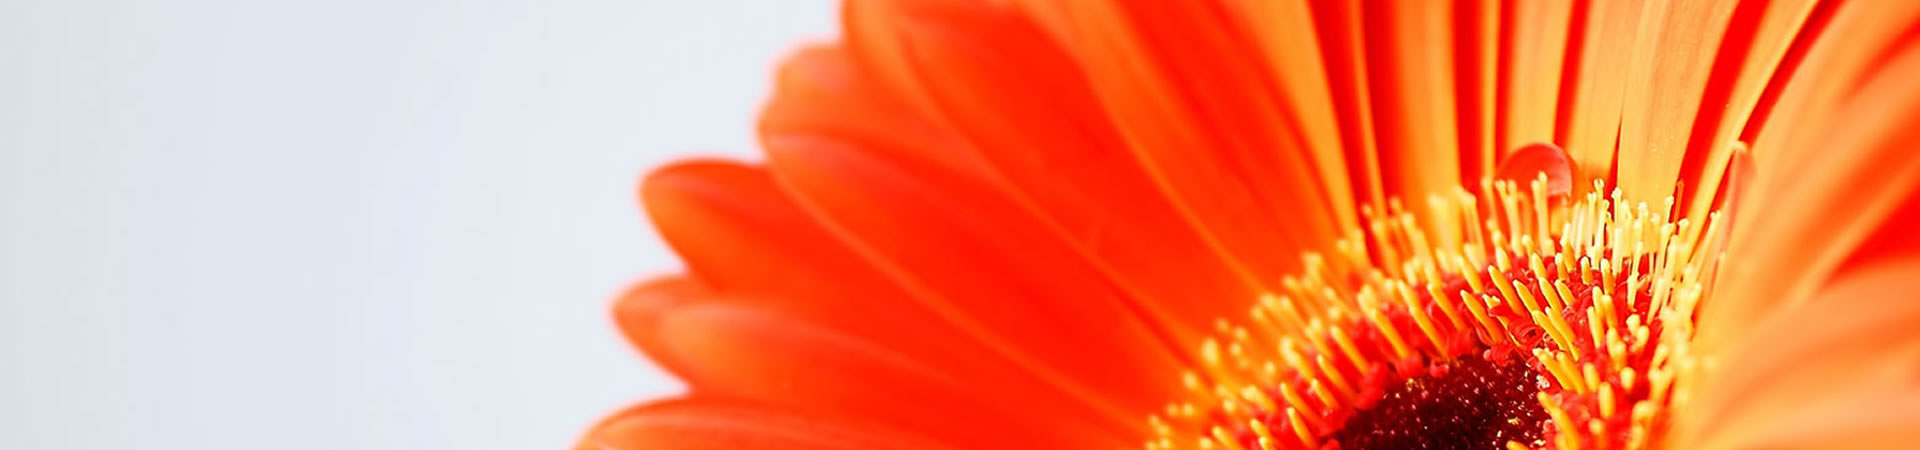 orange_flower_texture